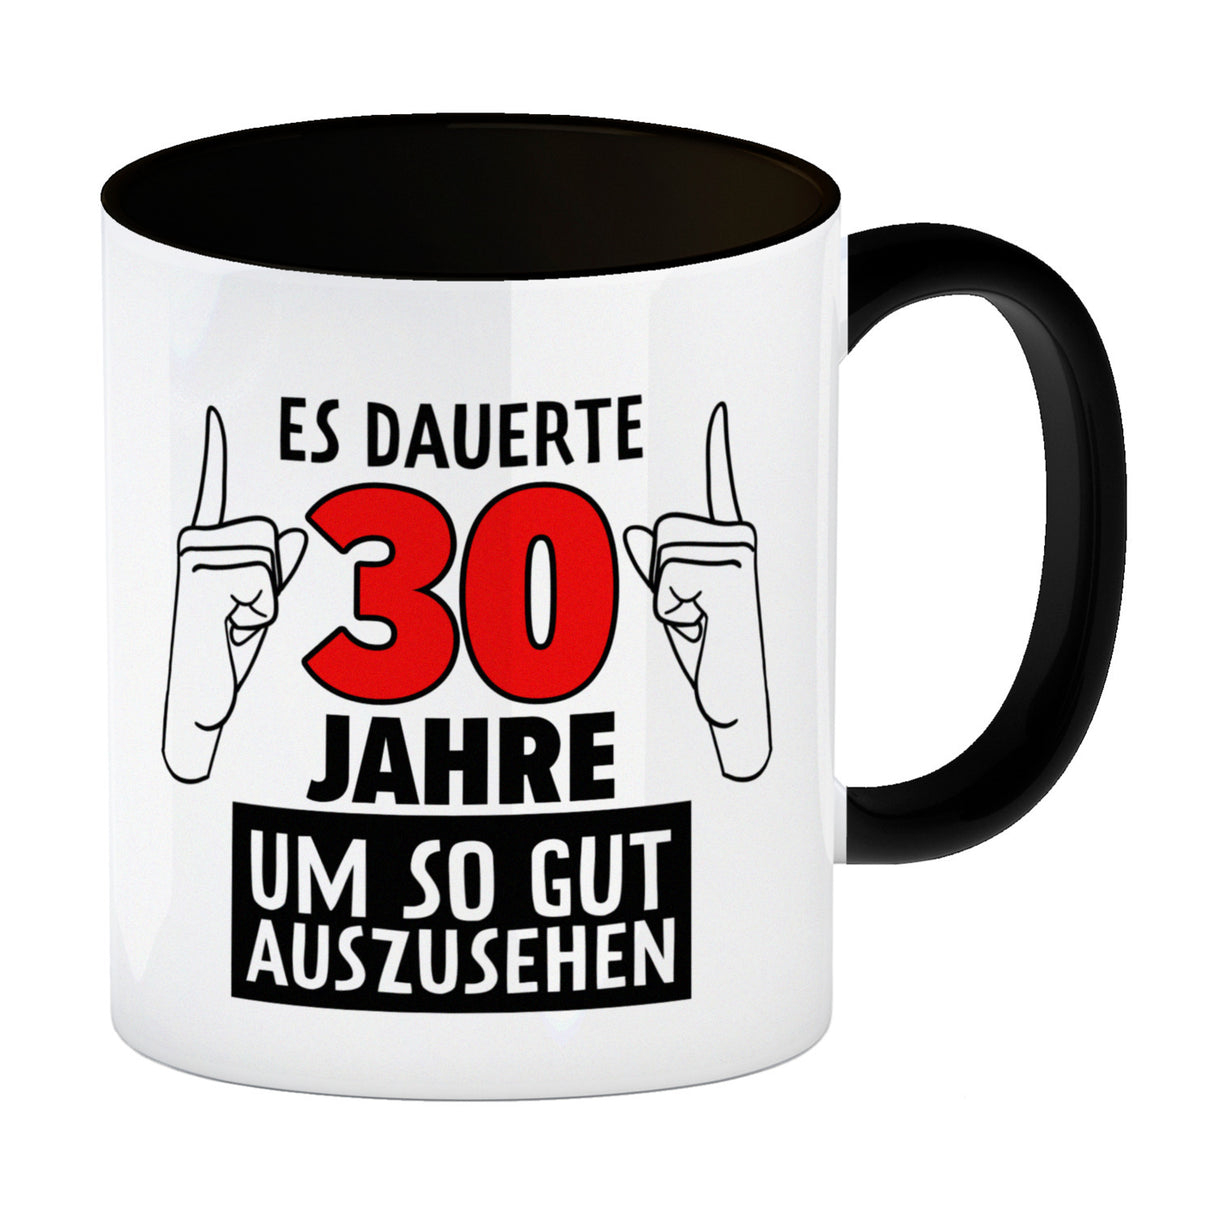 Kaffeebecher für den 30. Geburtstag mit Motiv: Gut aussehen